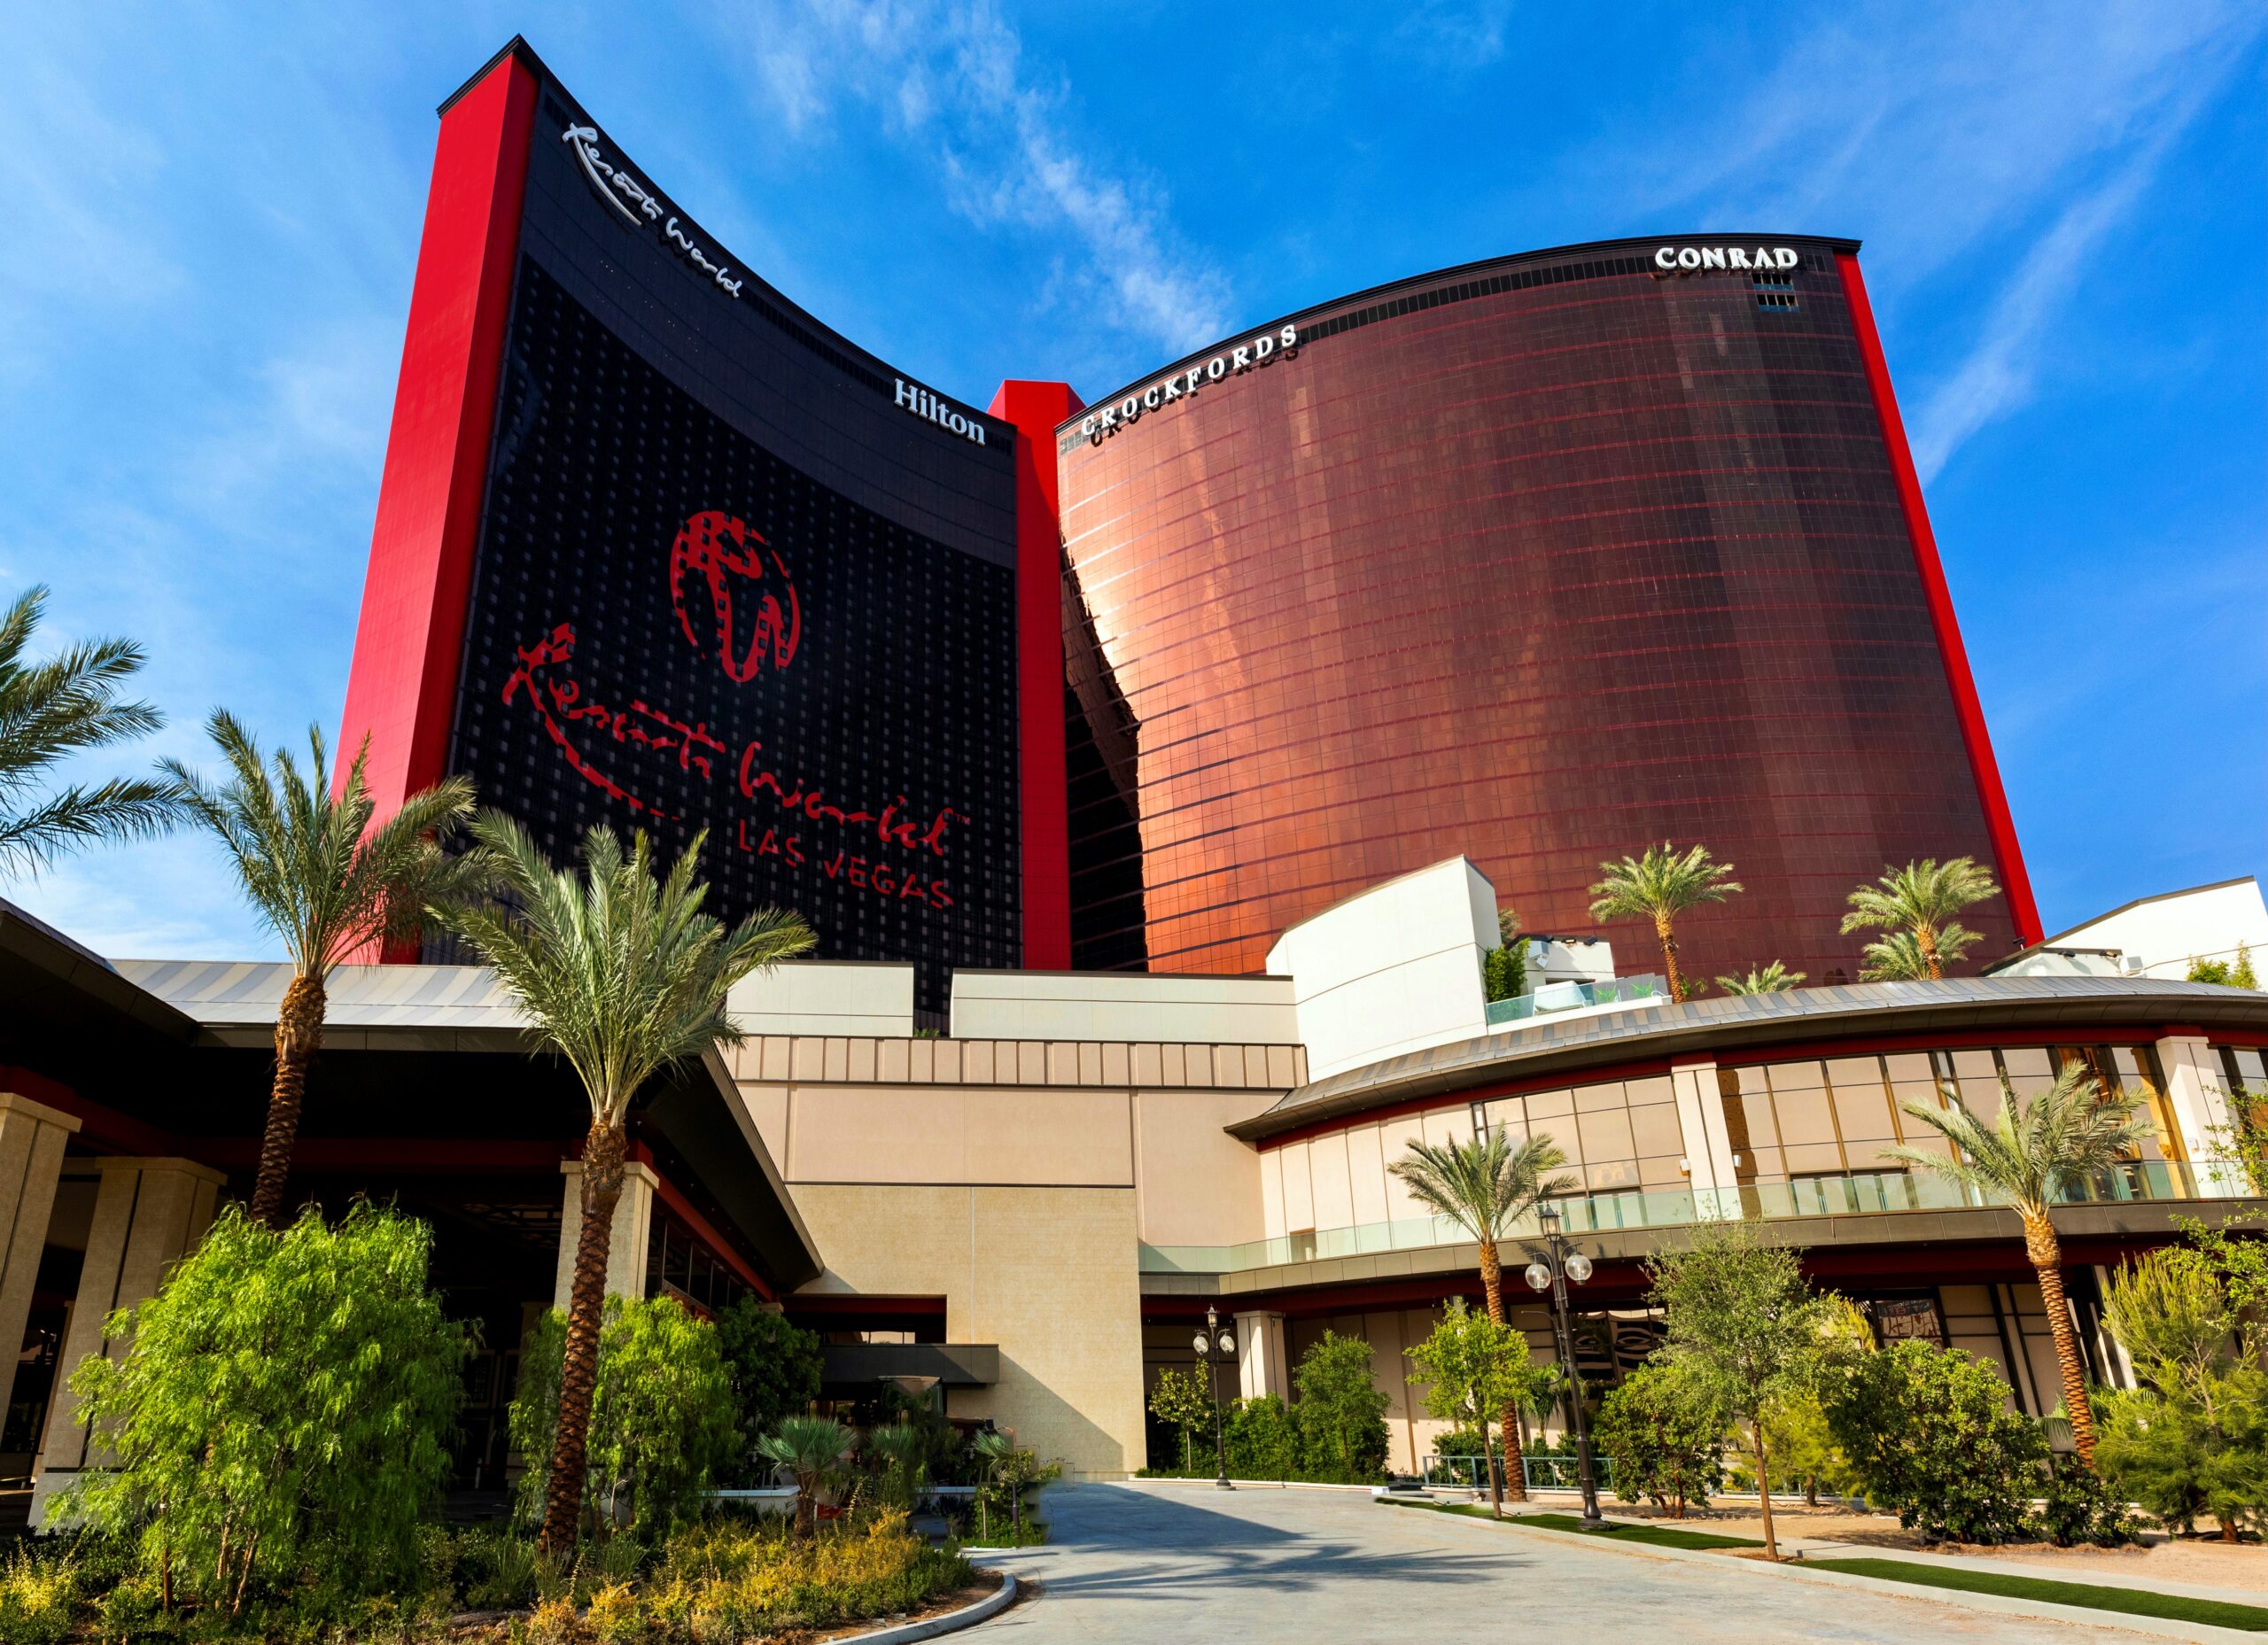 resorts world casino online